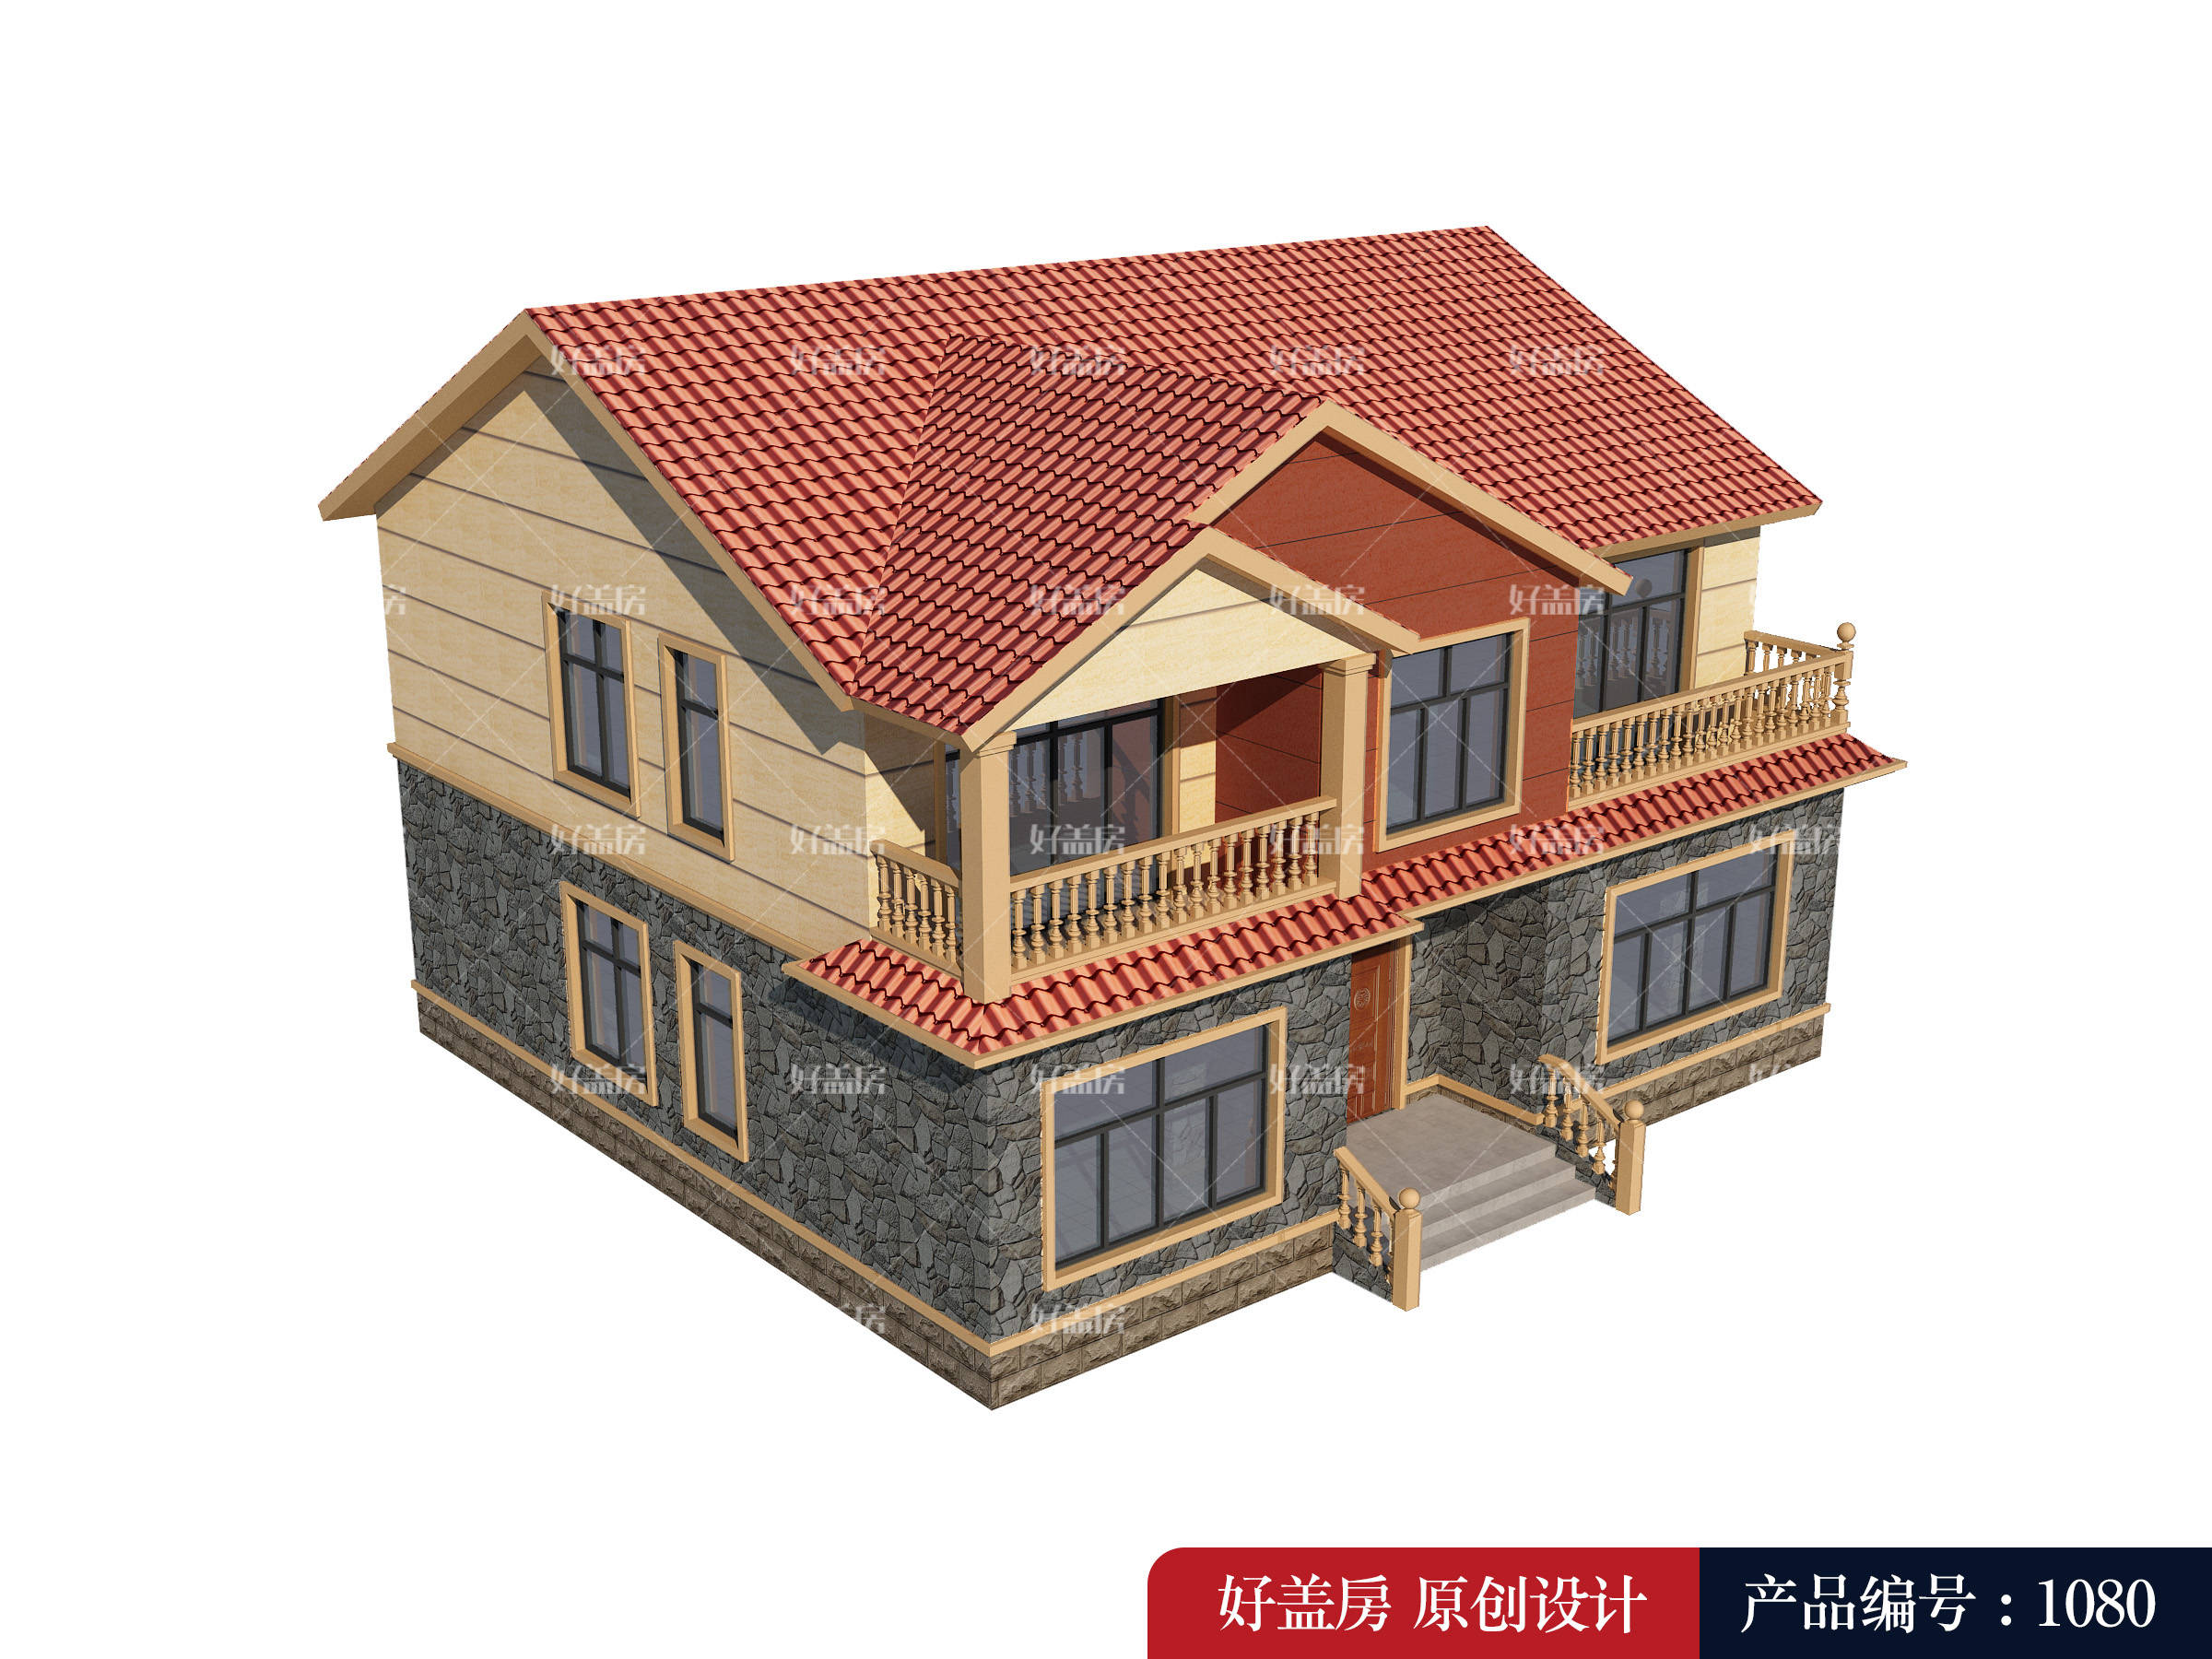 
新农村住宅设计图纸-jbo竞博官网(图2)